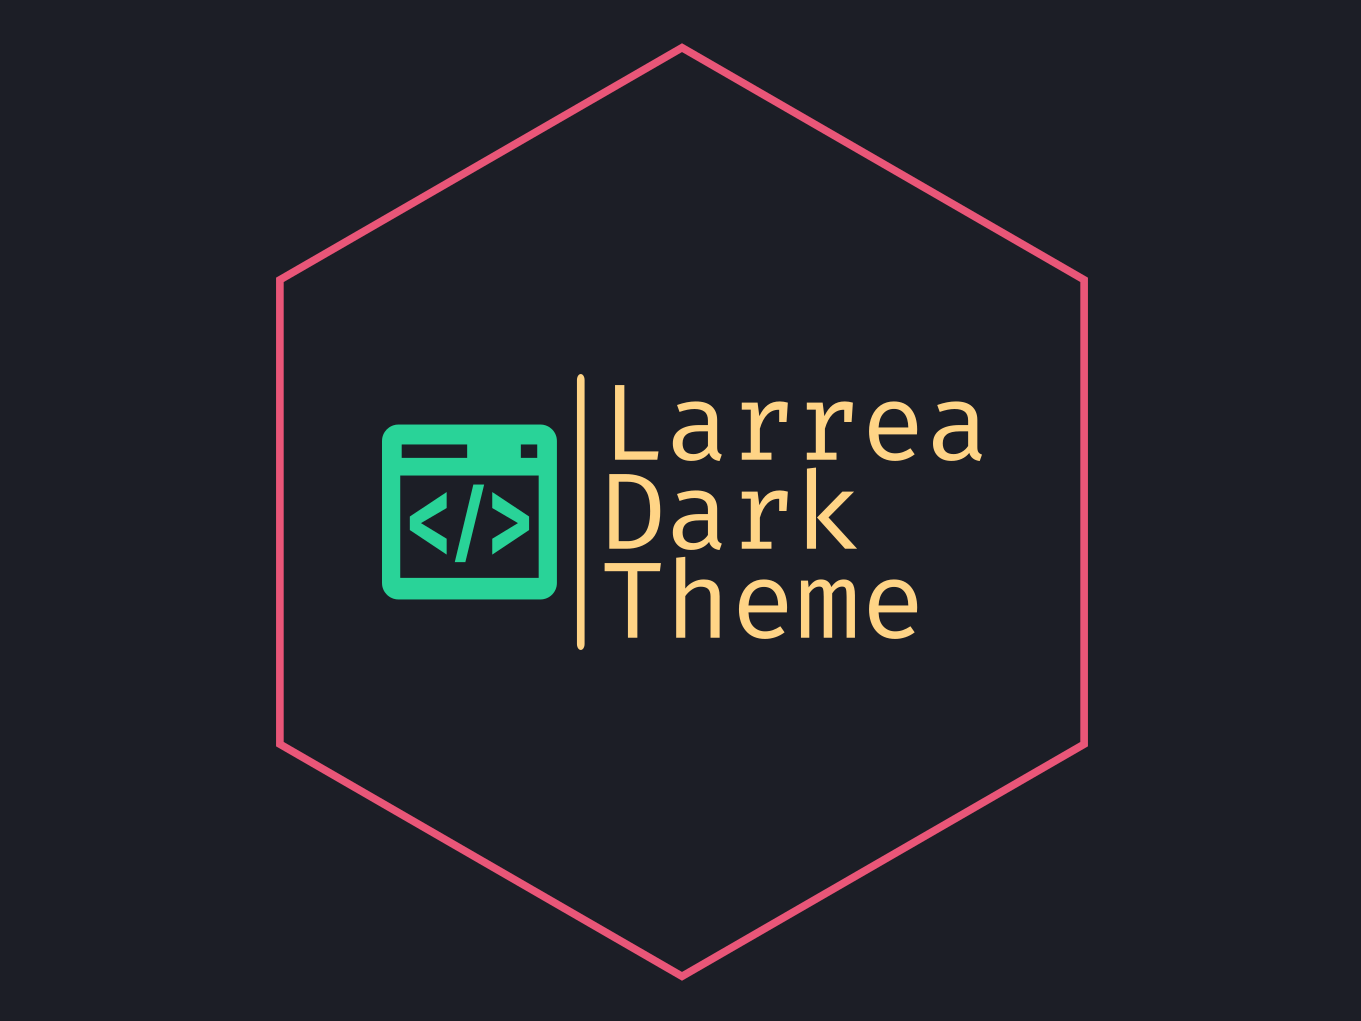 Larrea Dark